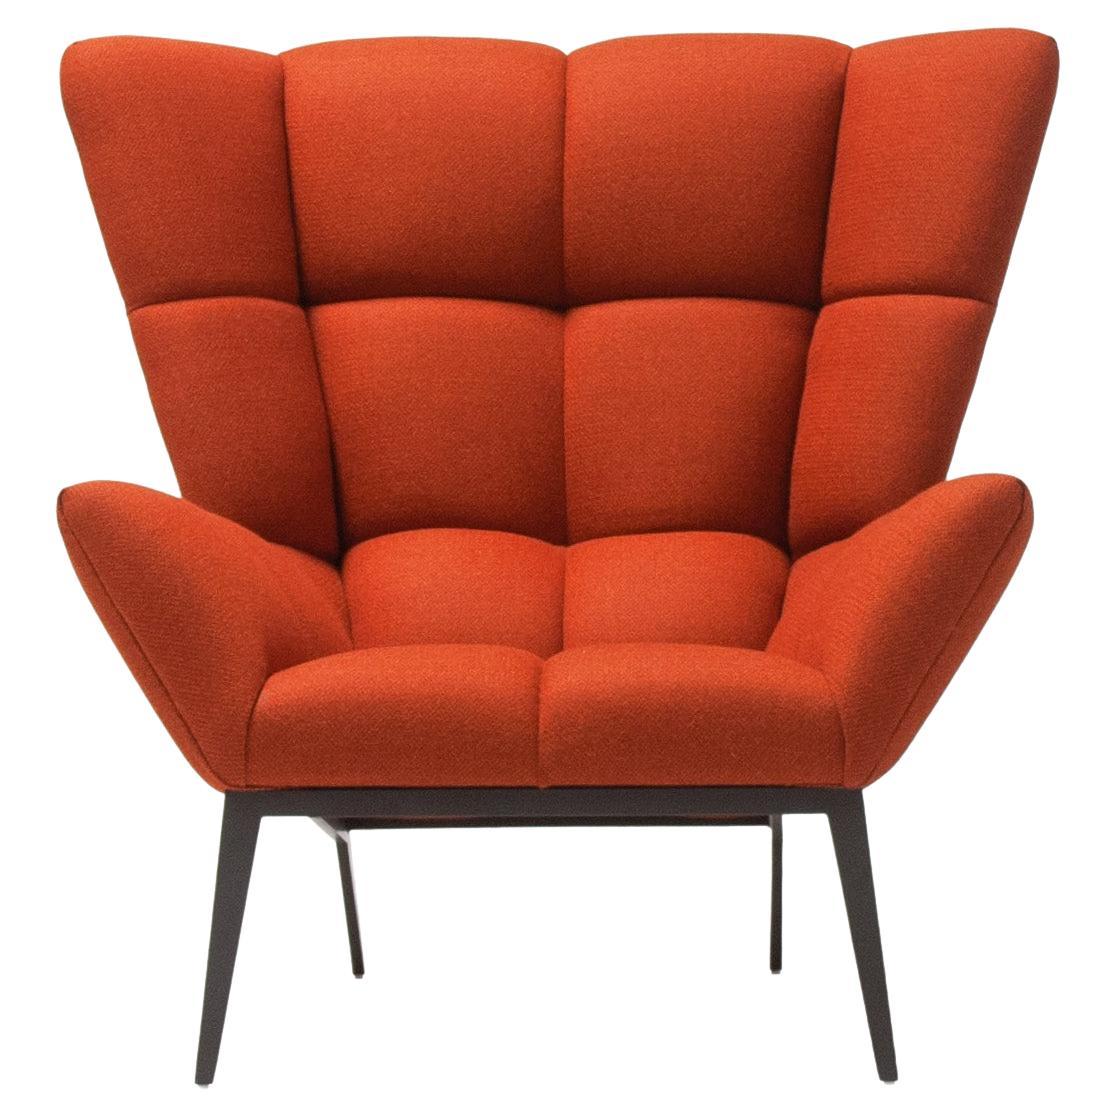 Vioski fauteuil de salon Tuulla touffeté moderne du nouveau siècle en orange pêche